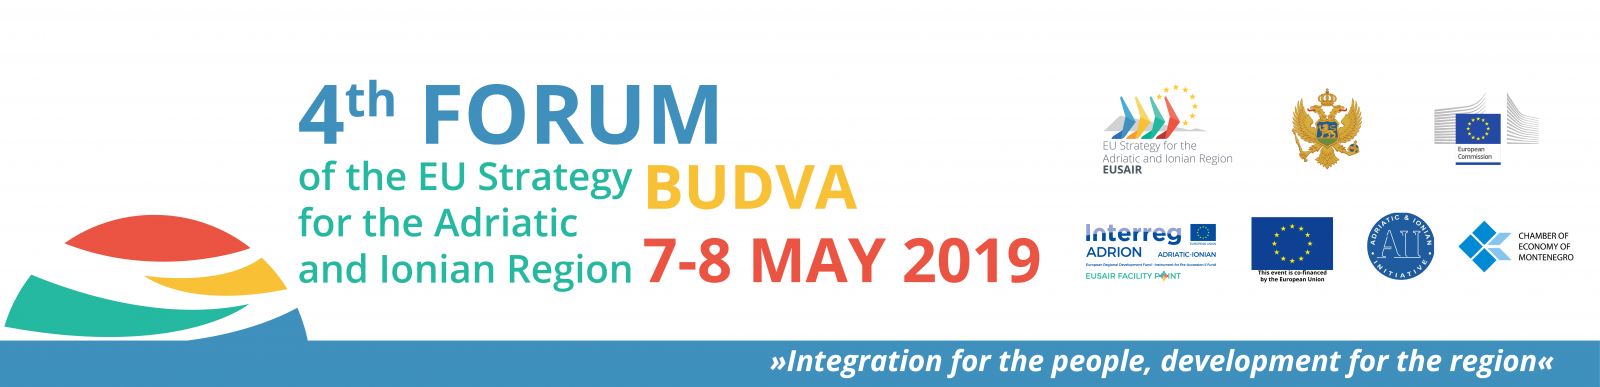 Четврти форум Стратегије Европске уније за Јадранско-јонски регион биће одржан у Будви од 6. до 8. маја